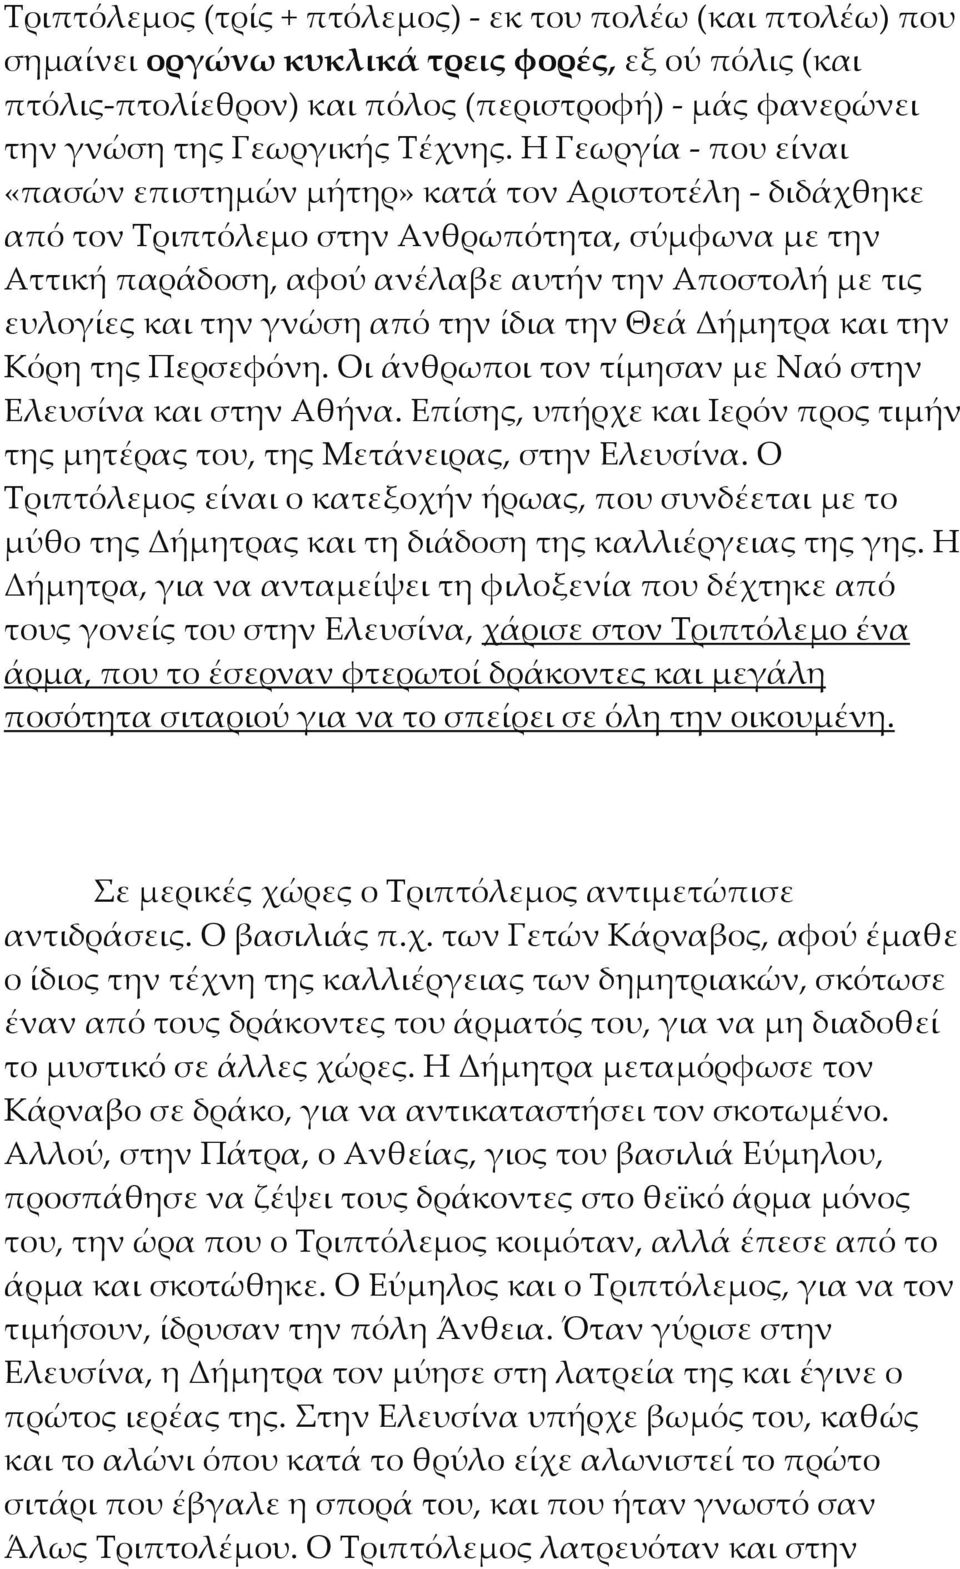 Η Γεωργία - που είναι «πασών επιστημών μήτηρ» κατά τον Αριστοτέλη - διδάχθηκε από τον Τριπτόλεμο στην Ανθρωπότητα, σύμφωνα με την Αττική παράδοση, αφού ανέλαβε αυτήν την Αποστολή με τις ευλογίες και